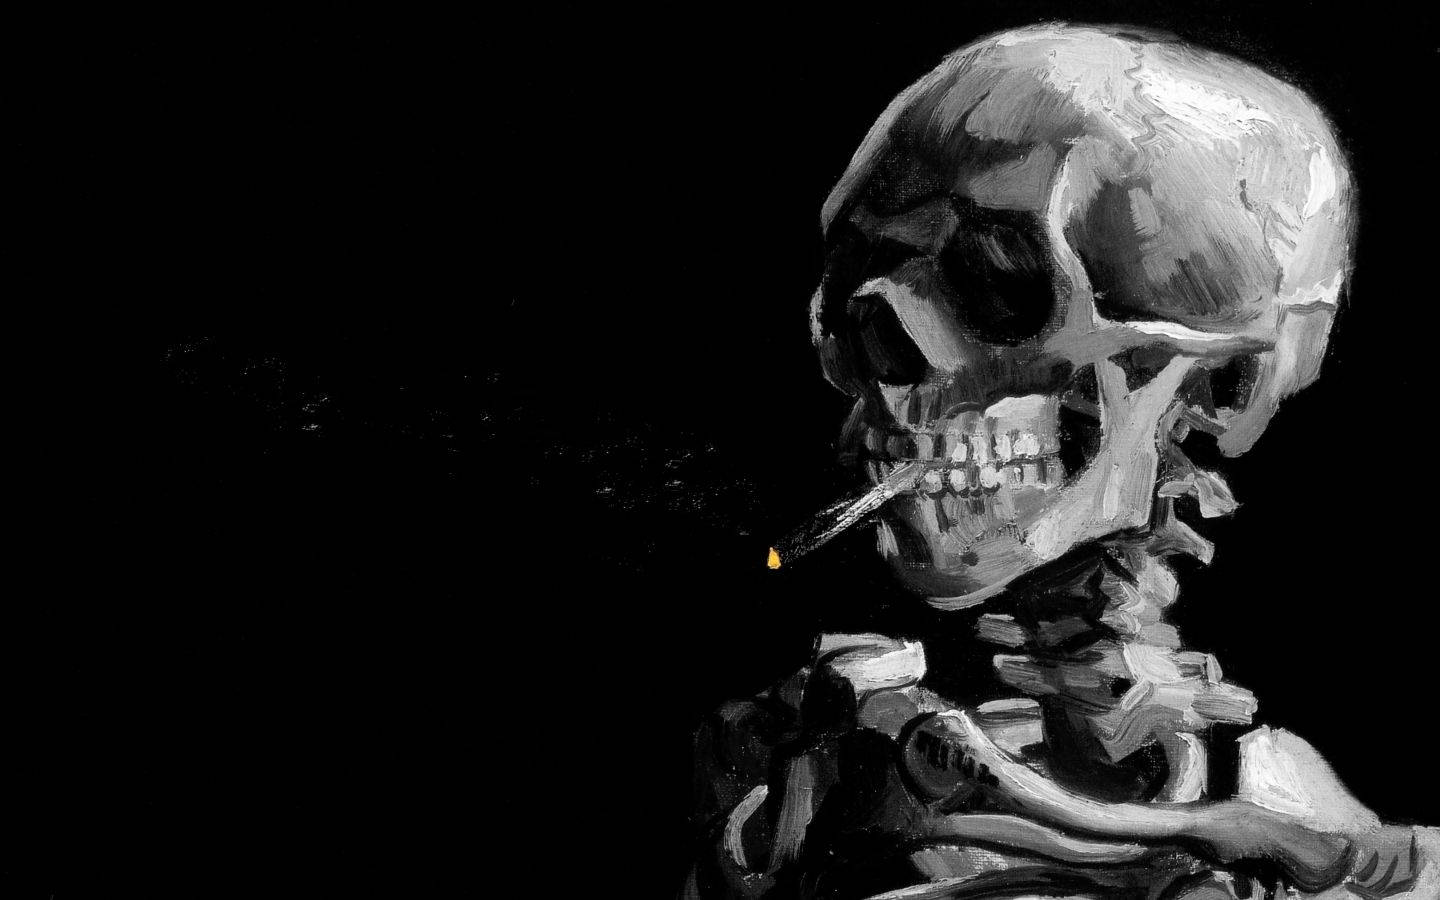 Monochrome Smoking Skeleton